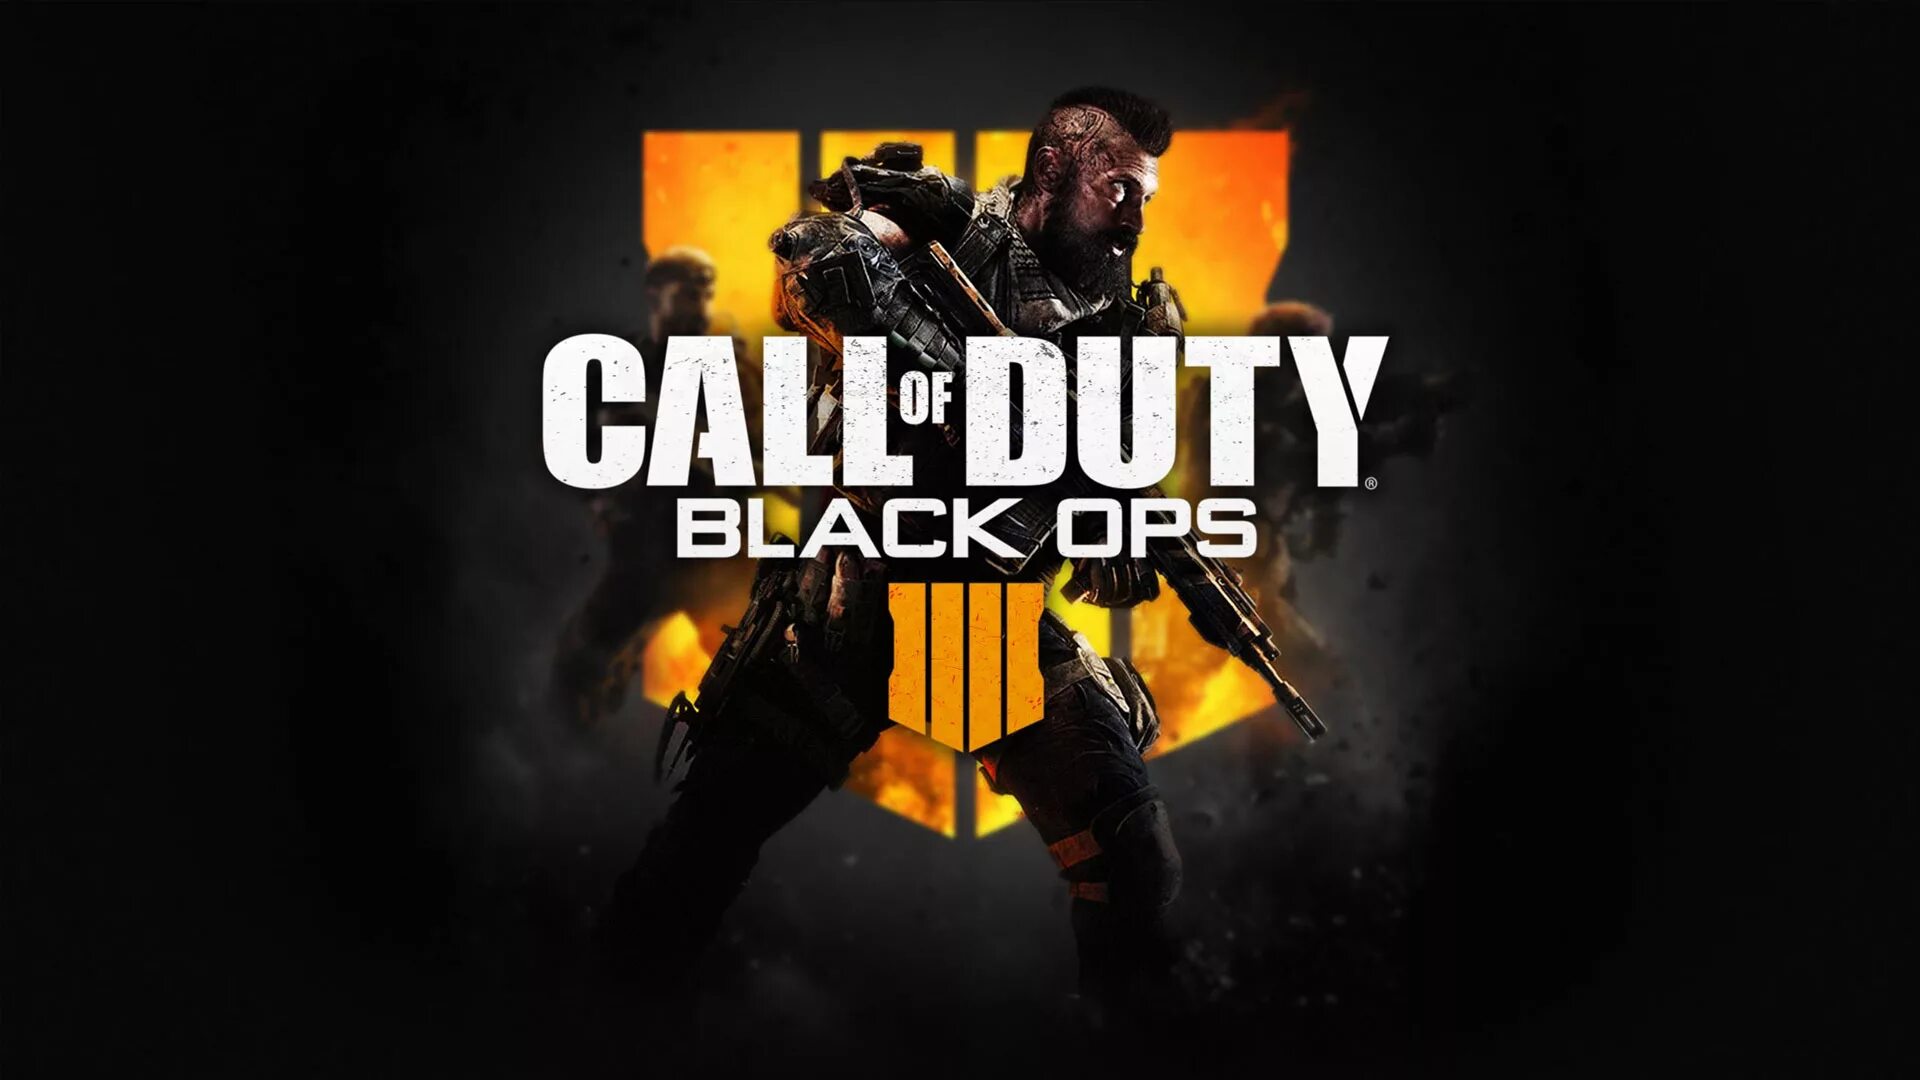 Кал оф дьюти опс 4. Cod Black ops 4 обложка. Cod Black ops 4 Постер. Call of Duty bo4. Call of Duty: Black ops 4 обложка игры.